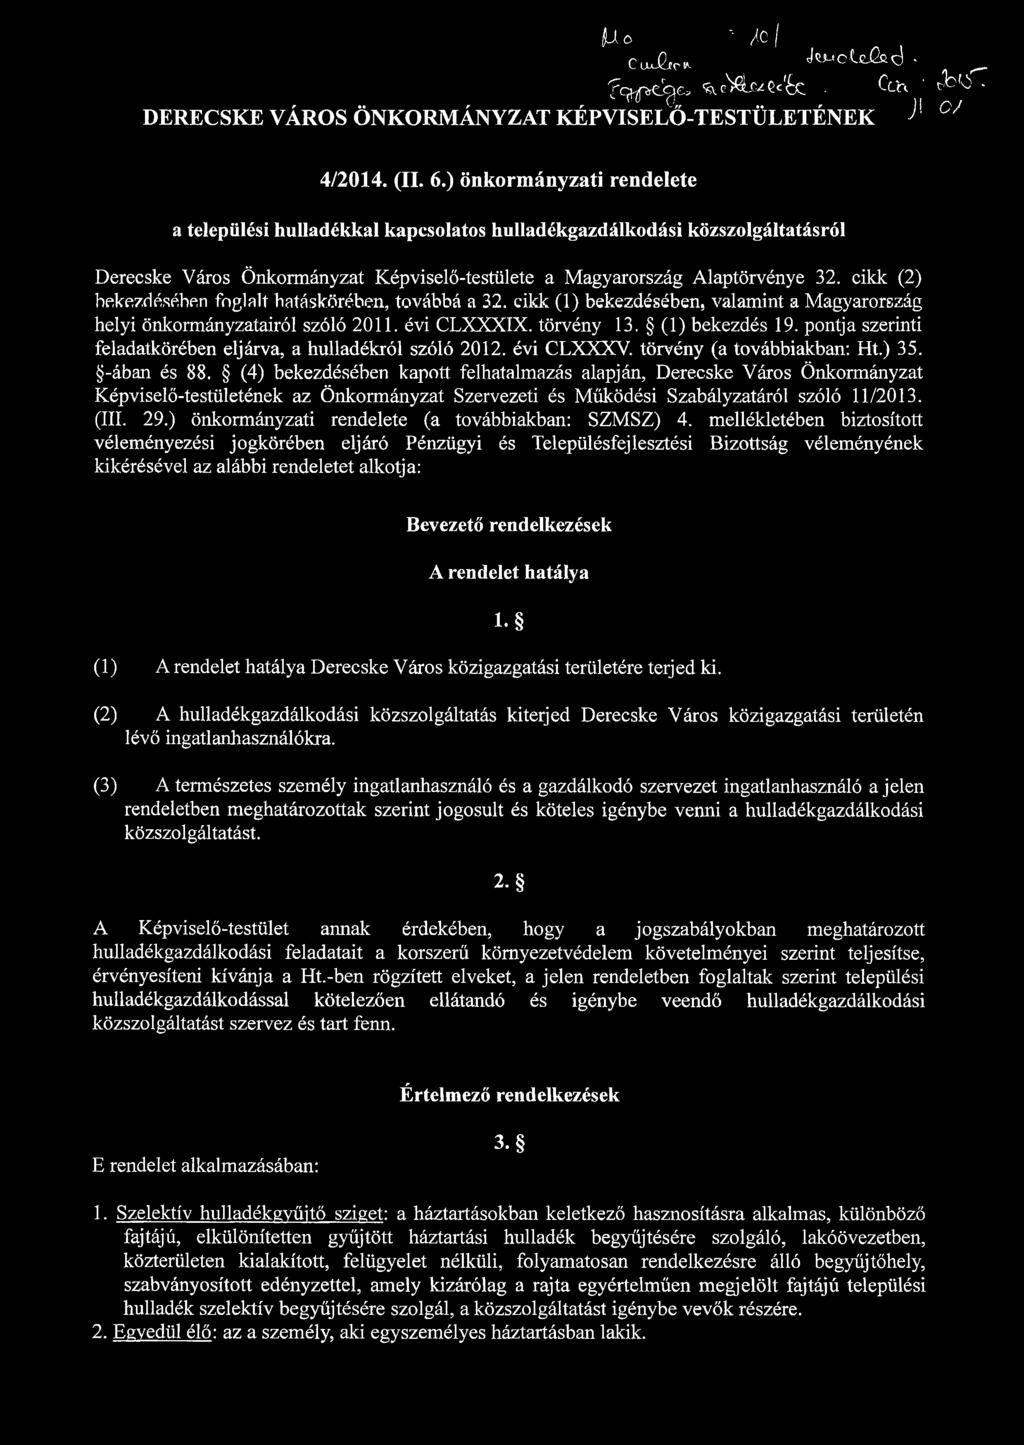 cikk (2) bekezdésében foglalt hatáskörében, továbbá a 32. cikk (1) bekezdésében, valamint a Magyarország helyi önkormányzatairól szóló 2011. évi CLXXXIX. törvény 13. (1) bekezdés 19.